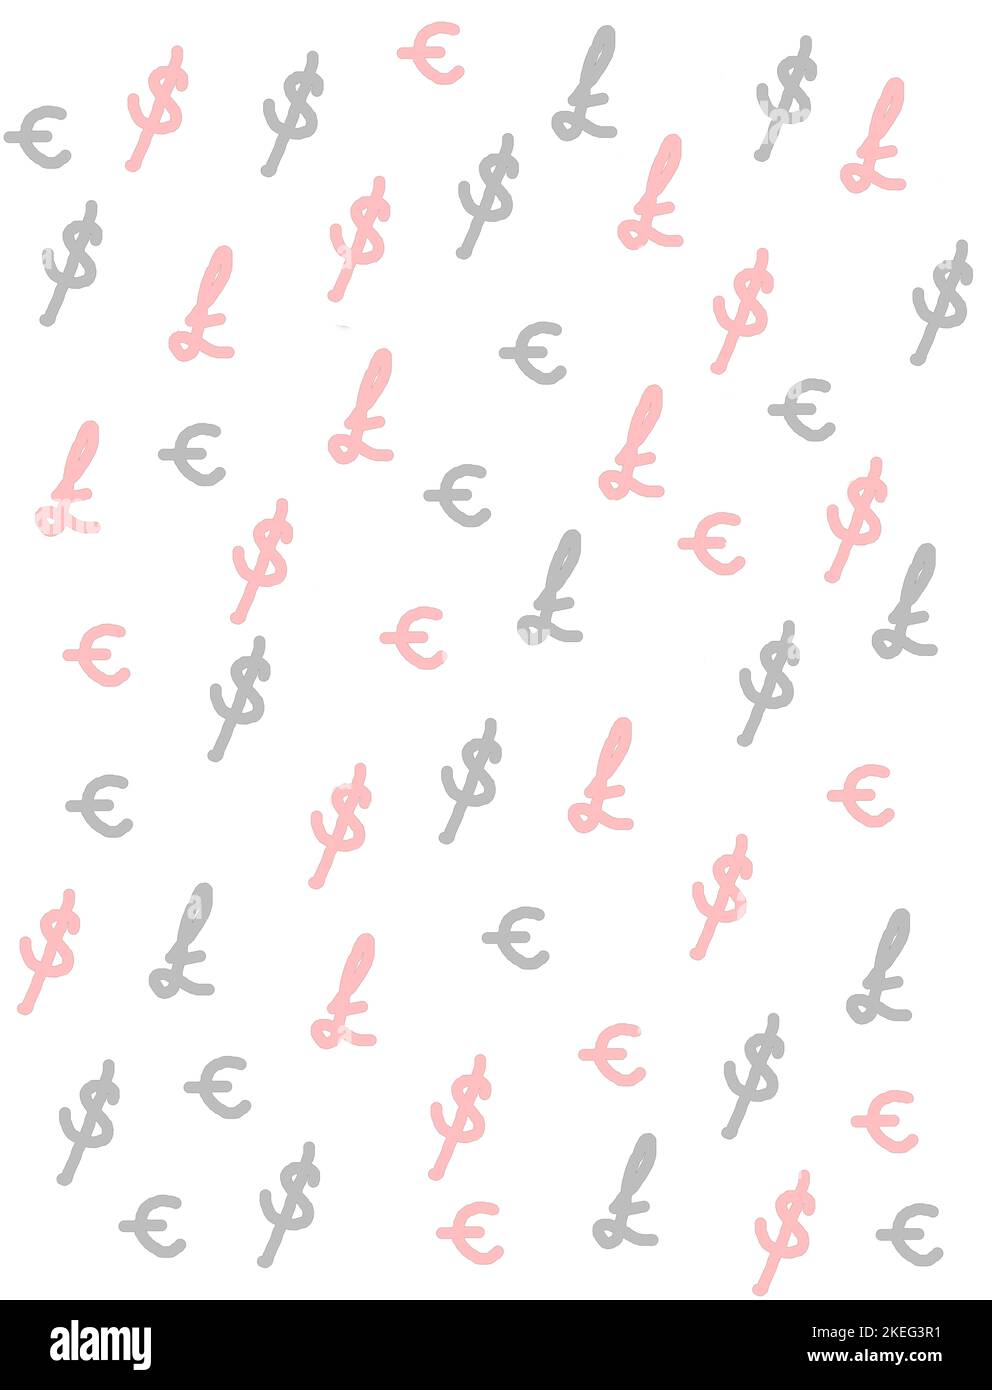 Simboli della sterlina, del dollaro e dell'euro in grigio e rosso pallido utilizzati per creare uno sfondo che illustri i tassi di cambio, l'economia, la finanza e il confronto. Foto Stock